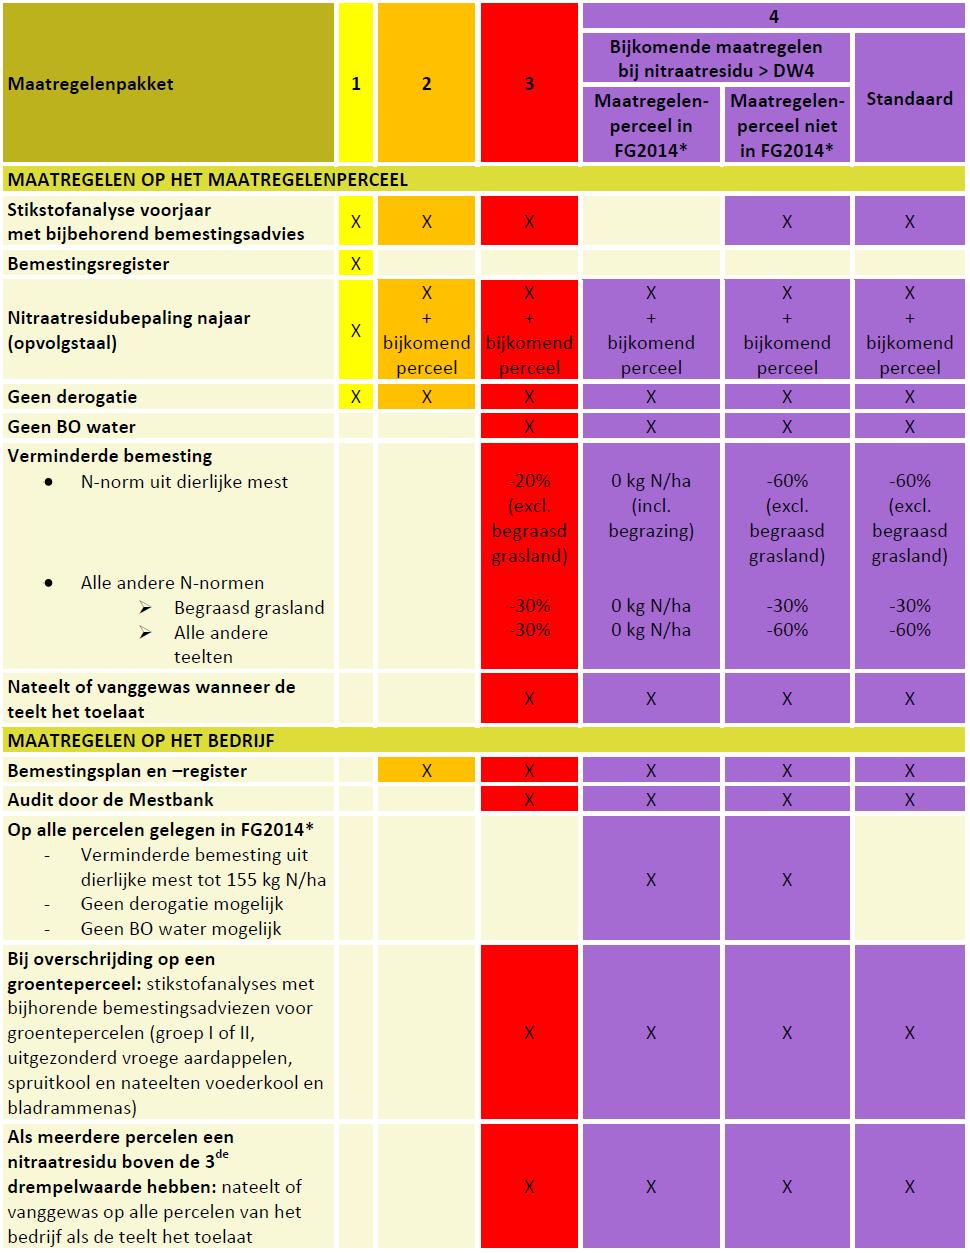 Tabel 31 Maatregelenpakketten 2014 als gevolg van een te hoog nitraatresidu in 2013 (* FG 2014: focusgebied 2014) Meer informatie over de verschillende maatregelen die opgelegd worden bij